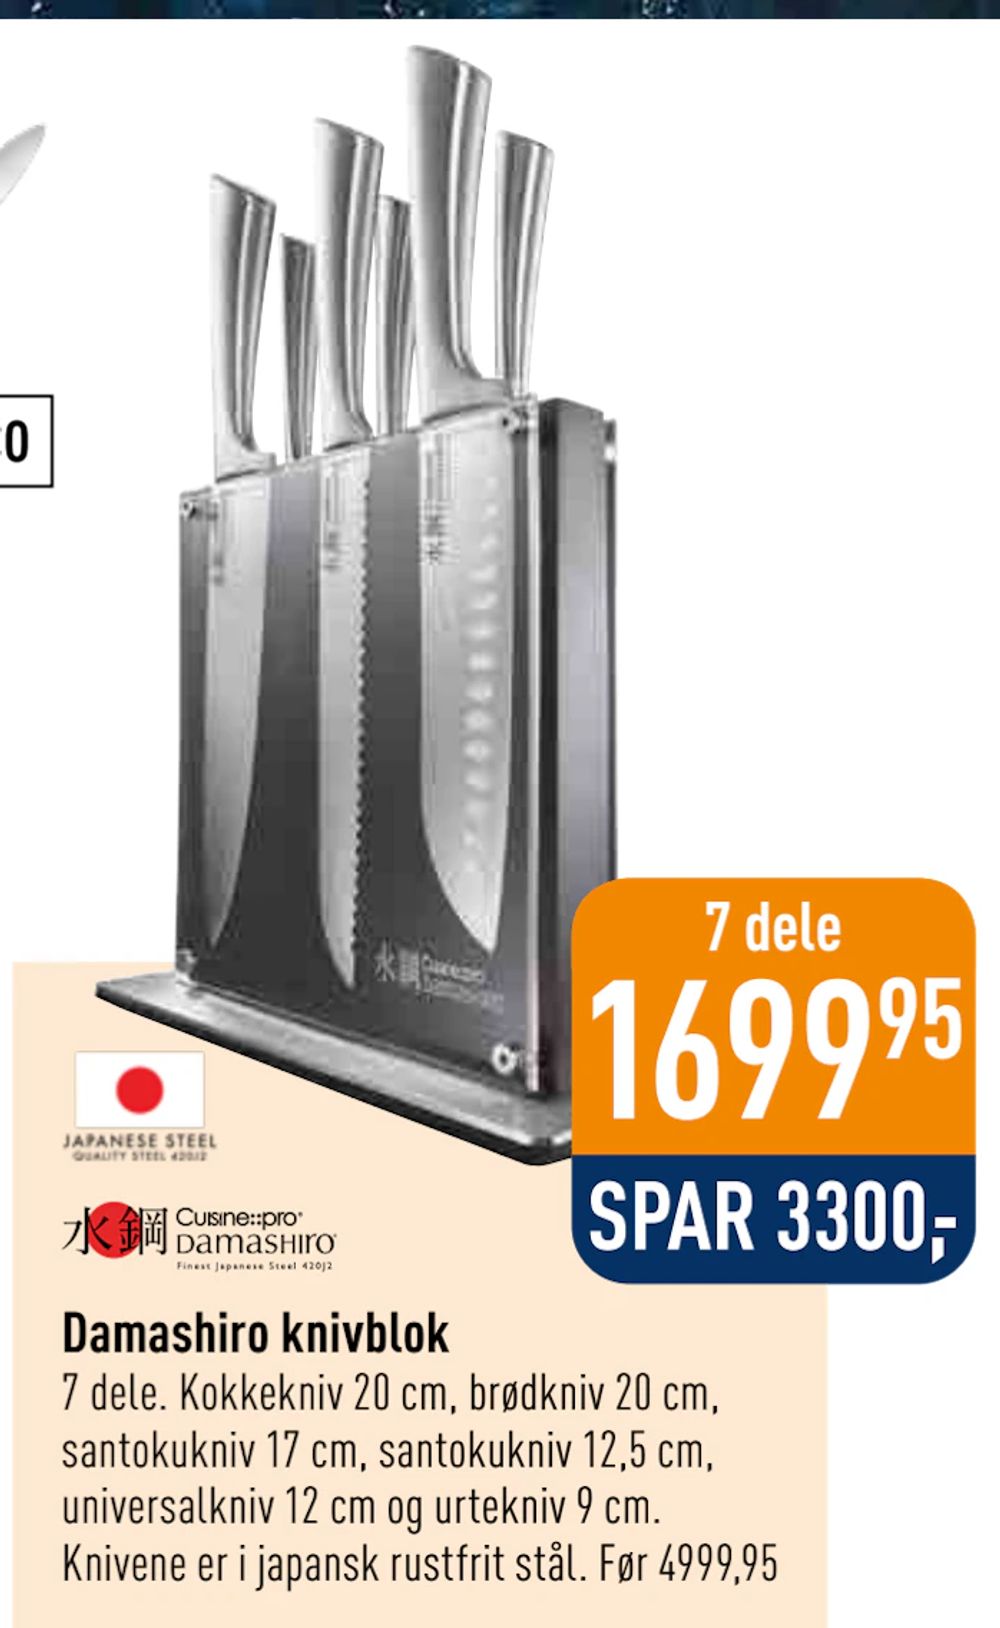 Tilbud på Damashiro knivblok fra Imerco til 1.699,95 kr.